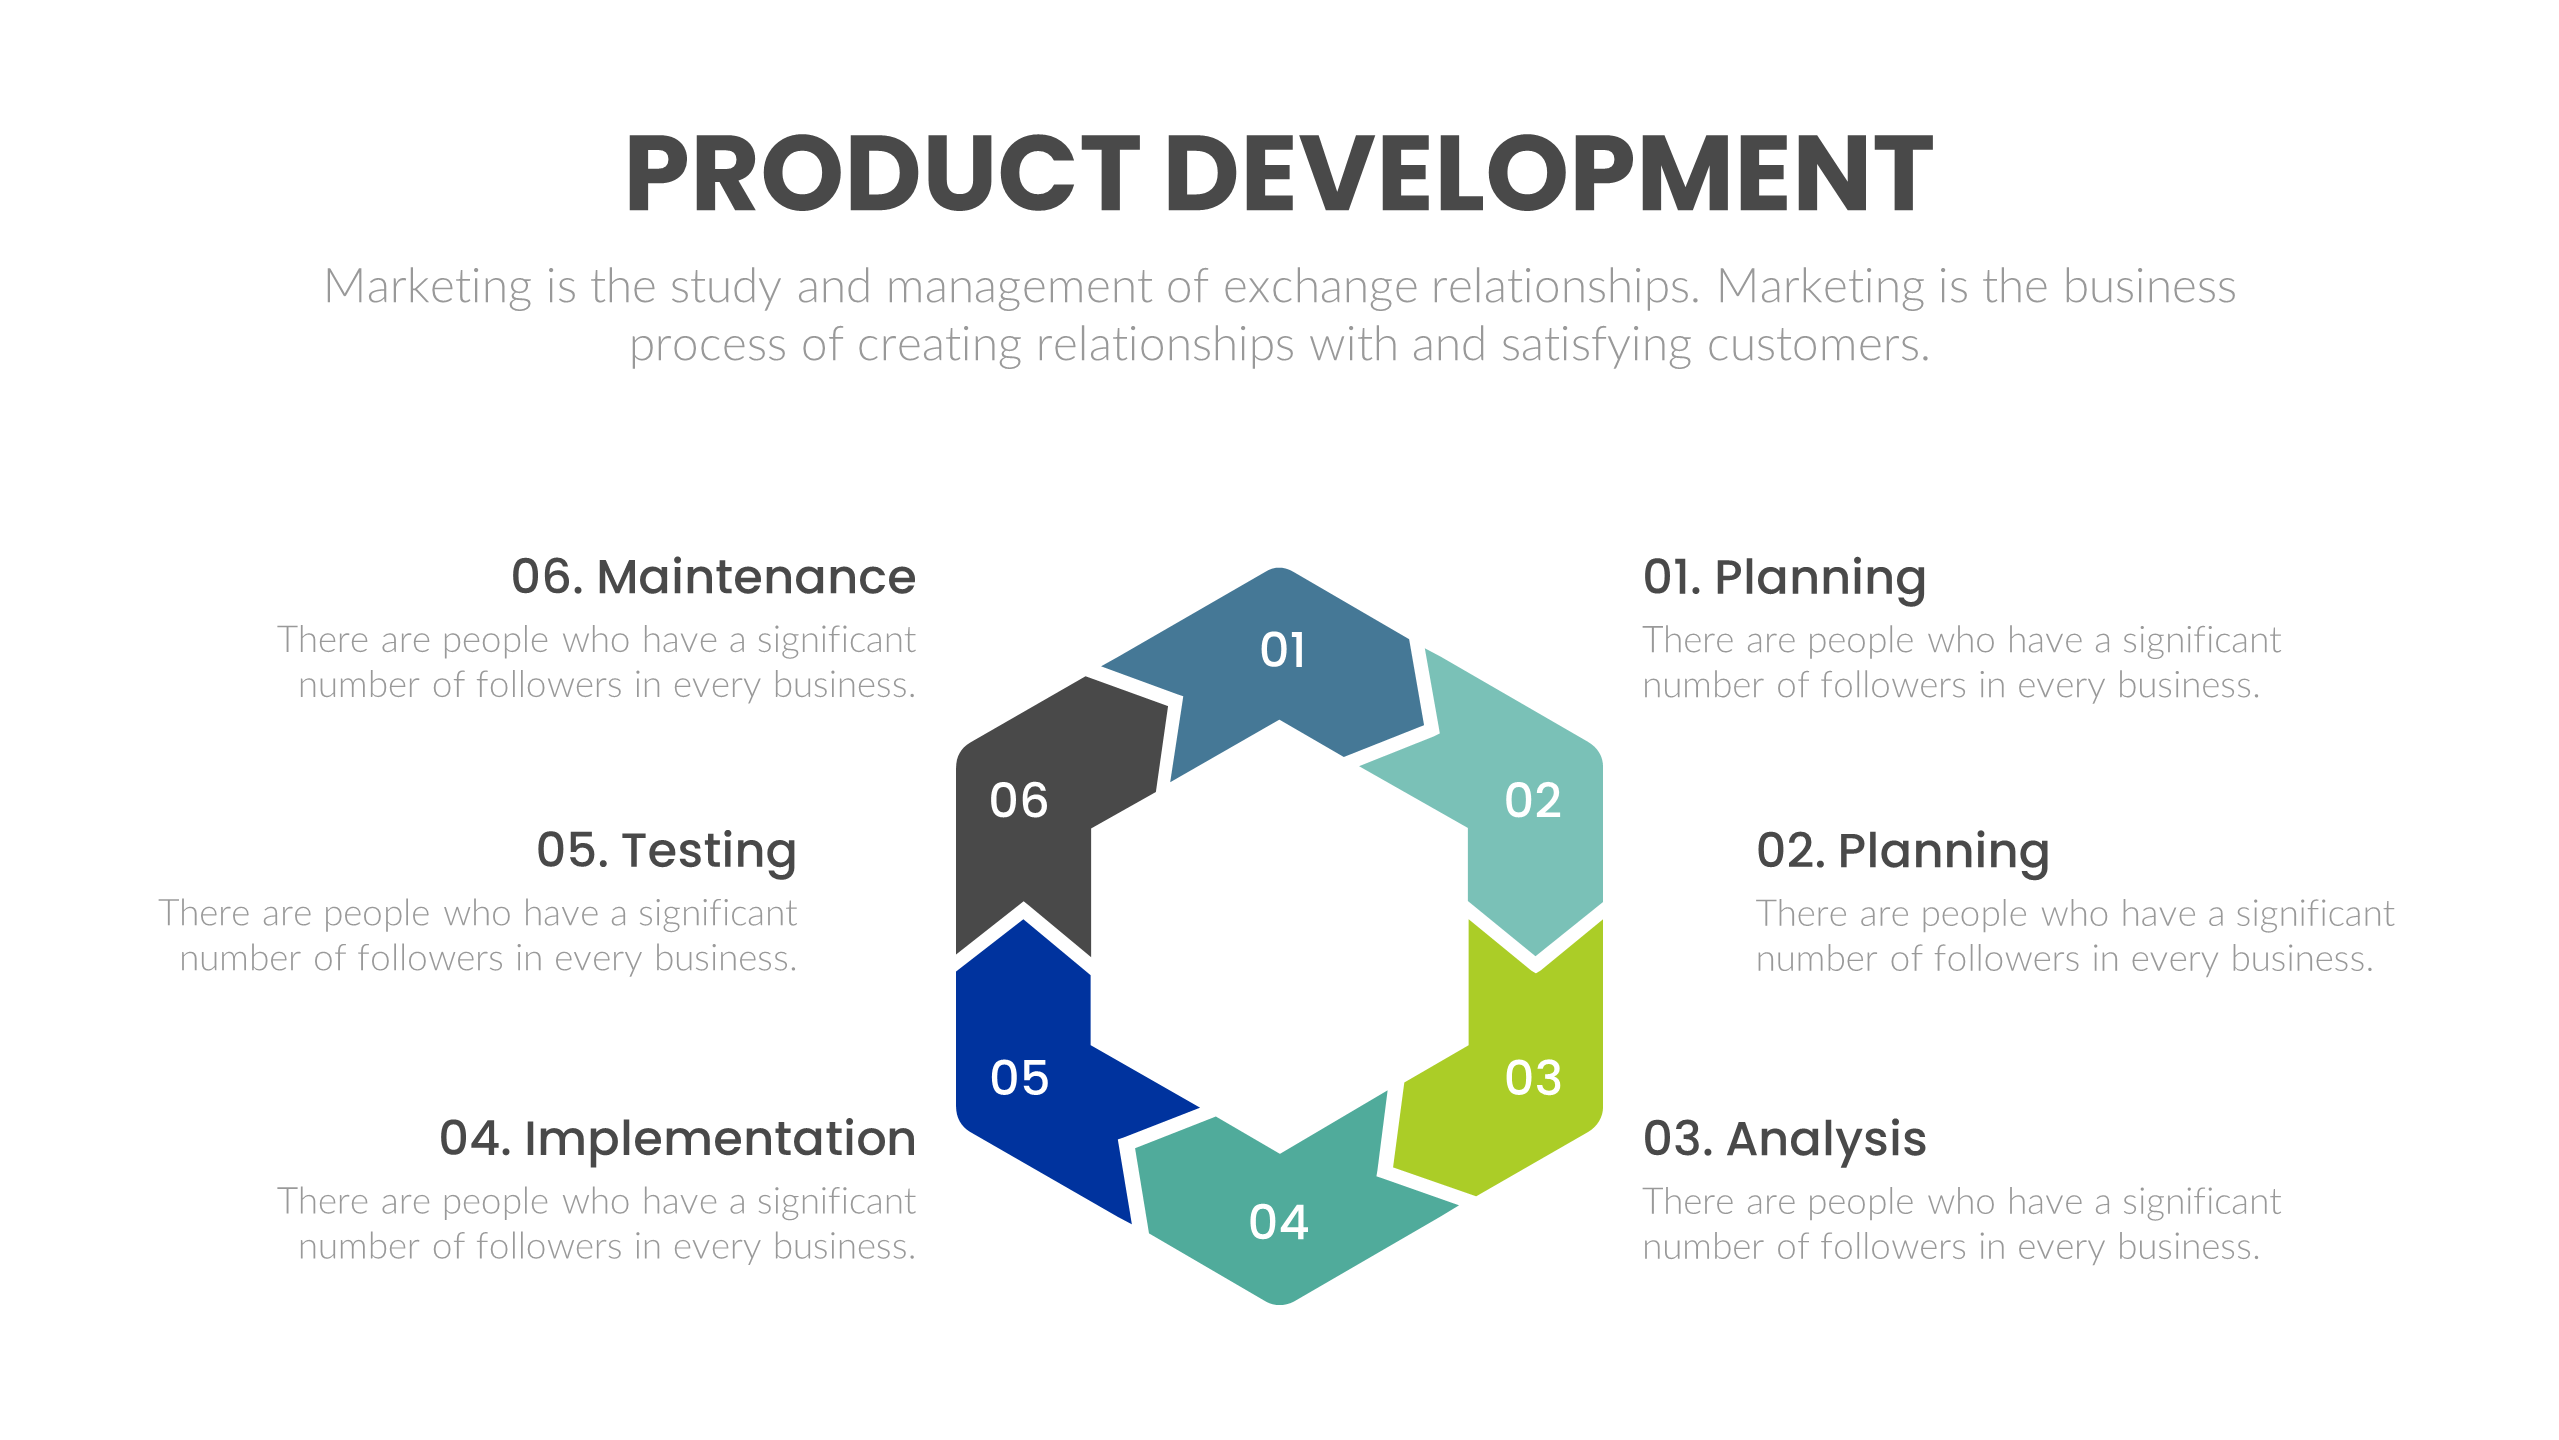 PPT Slide for Product Development